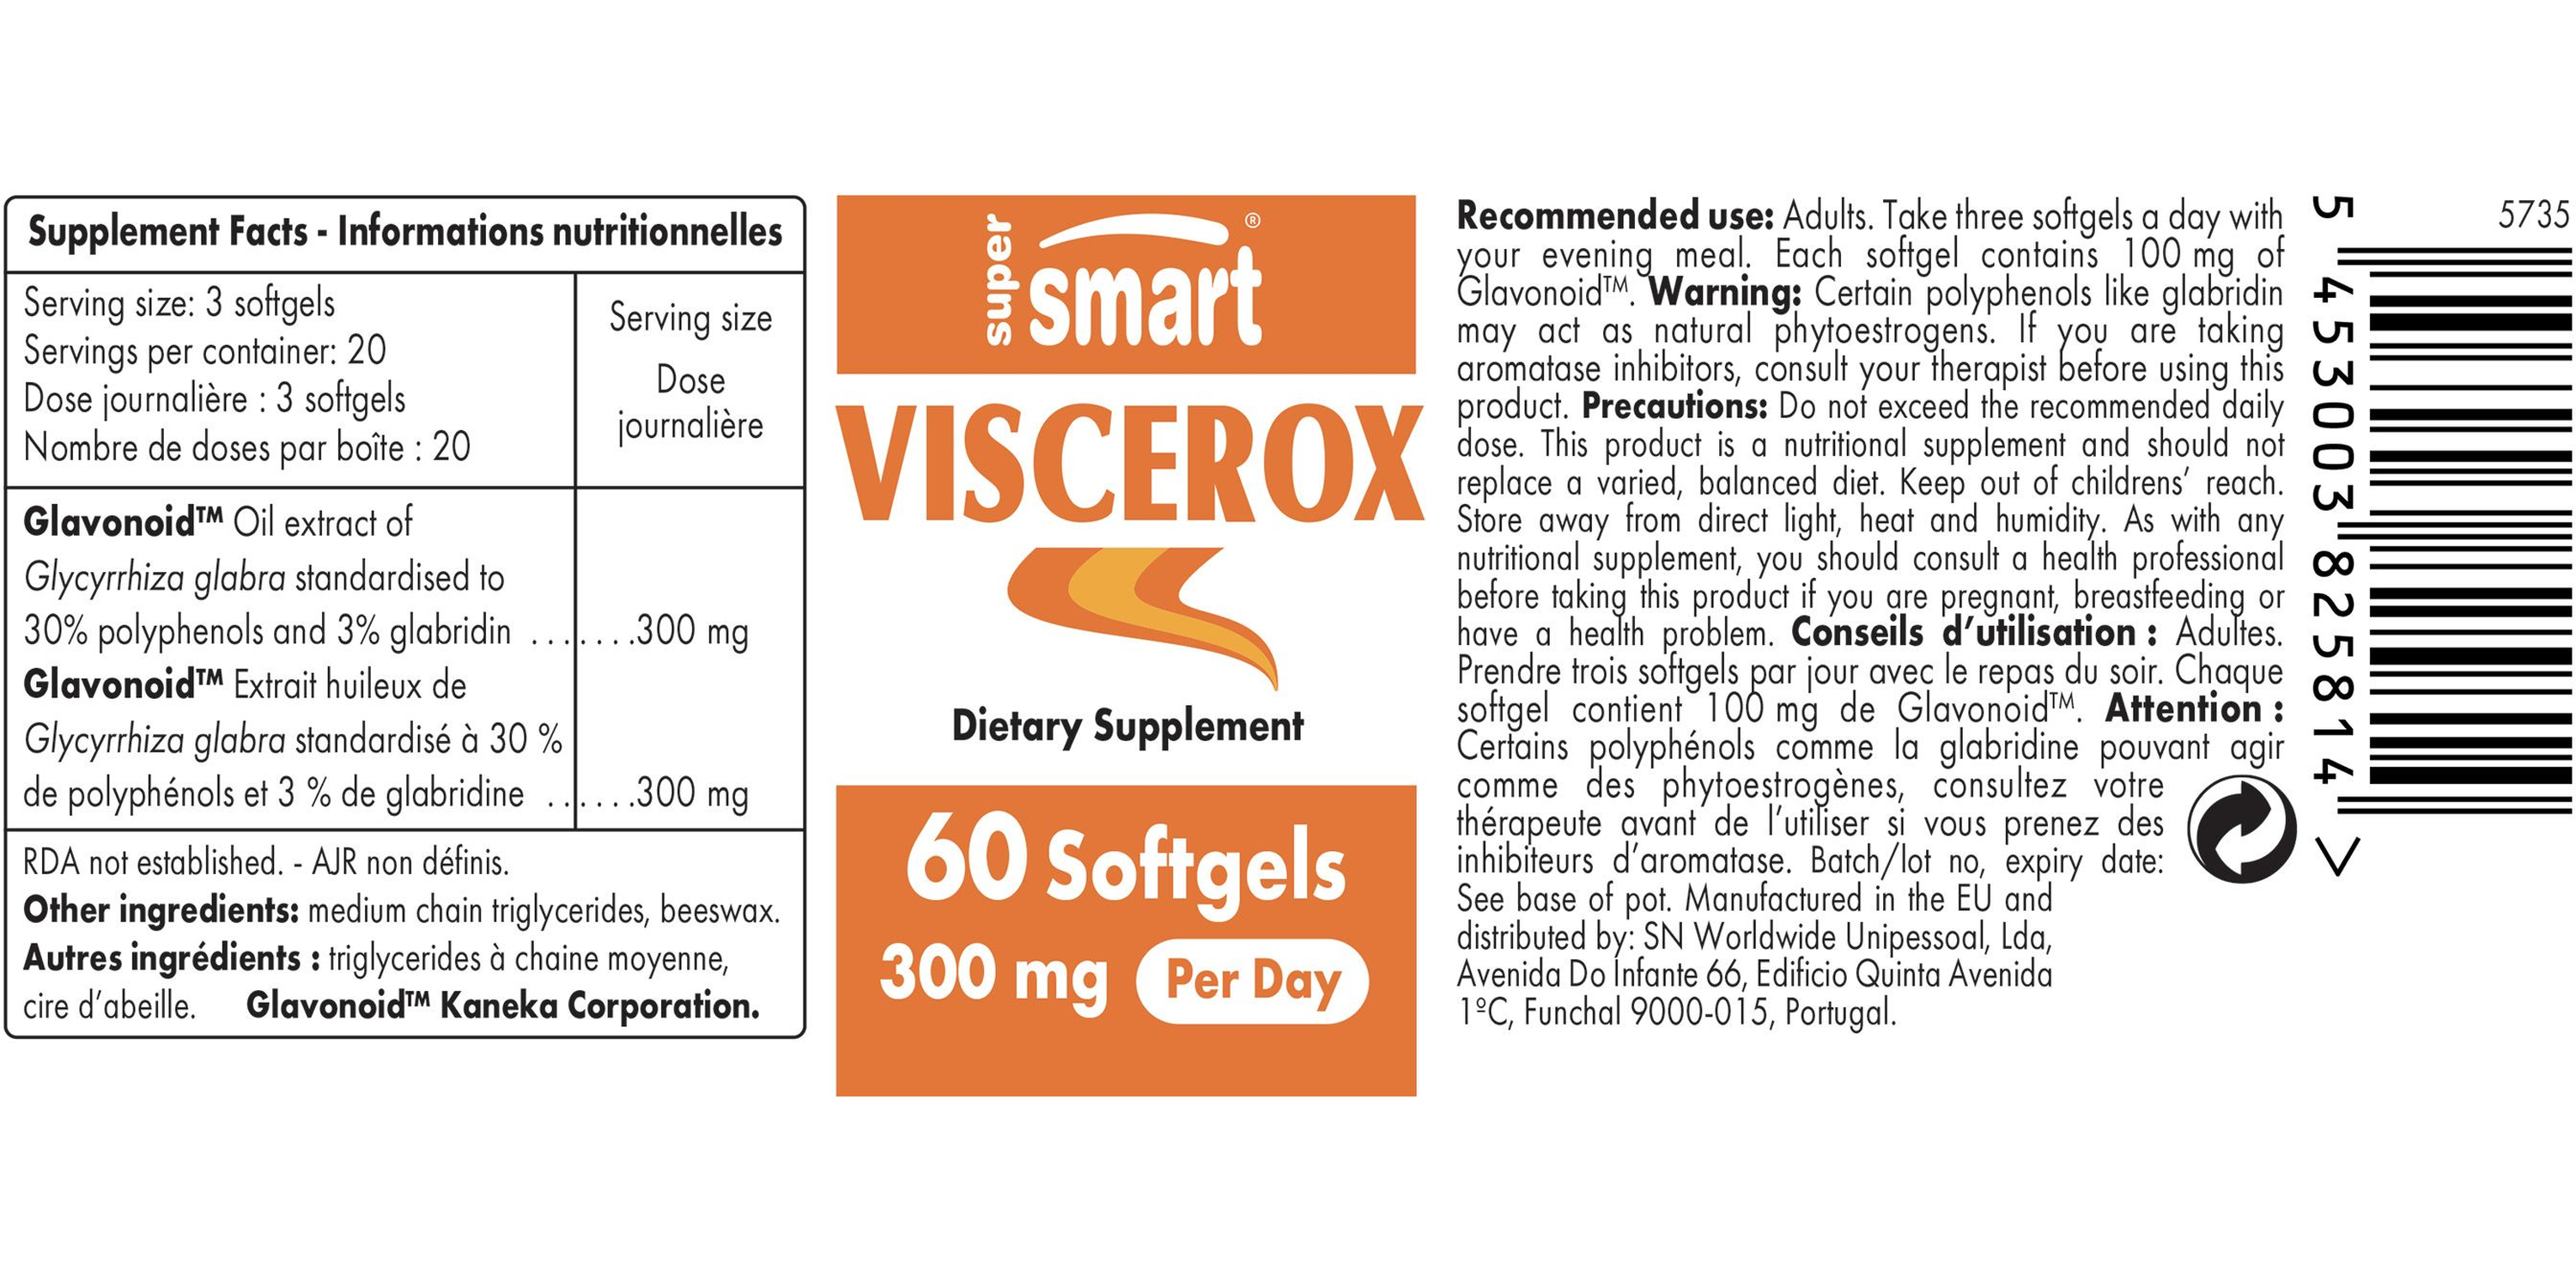 Viscerox Supplement